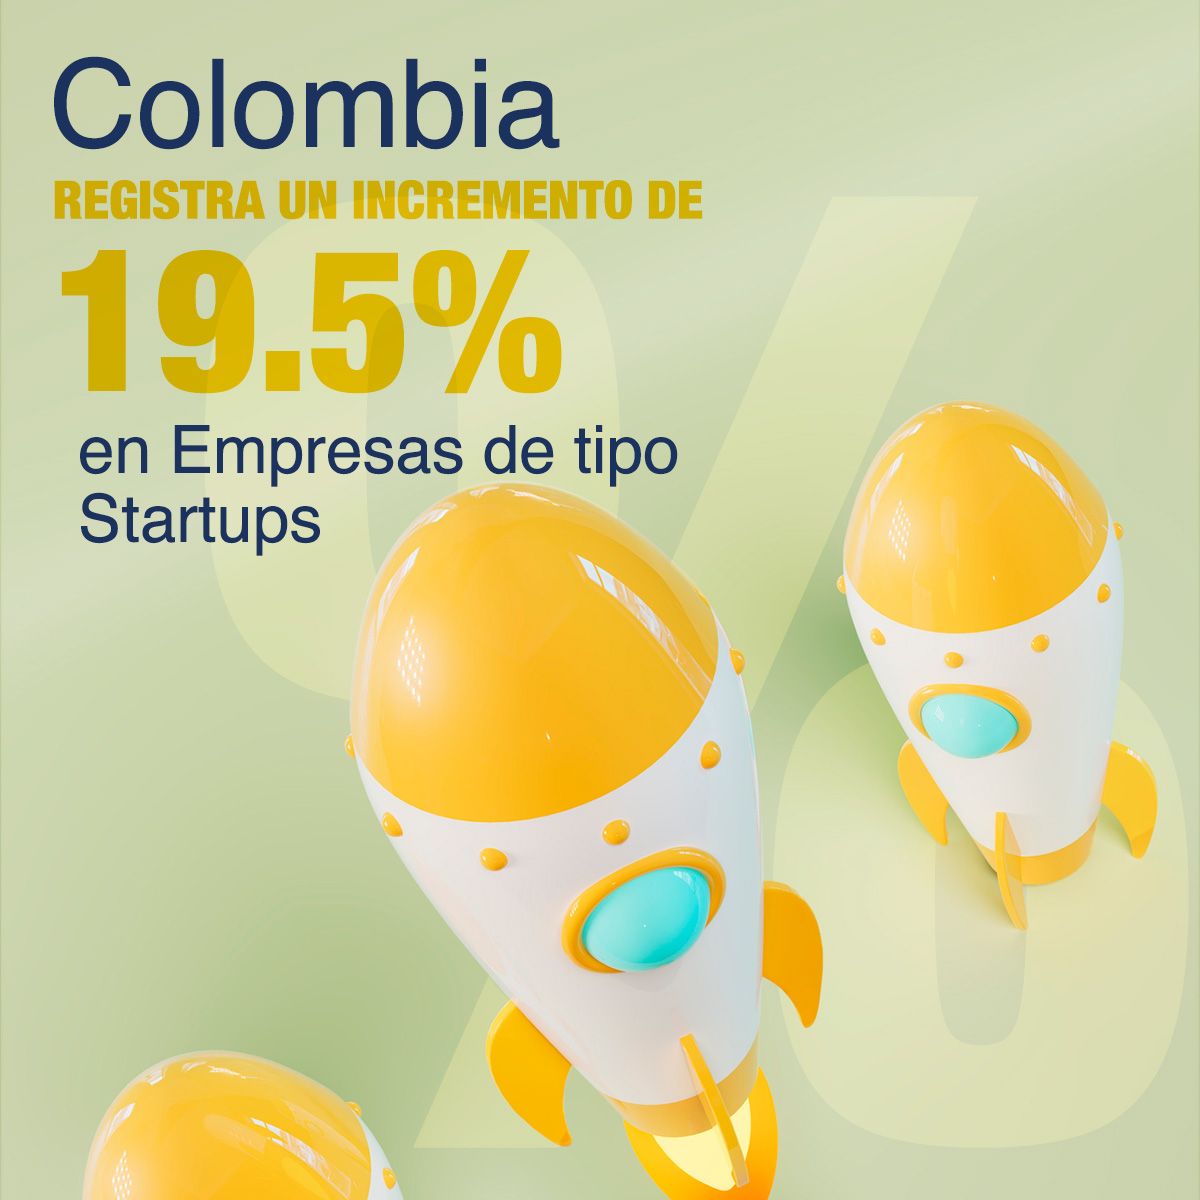 Colombia Registra un Incremento de 19.5% en Empresas de tipo Startups